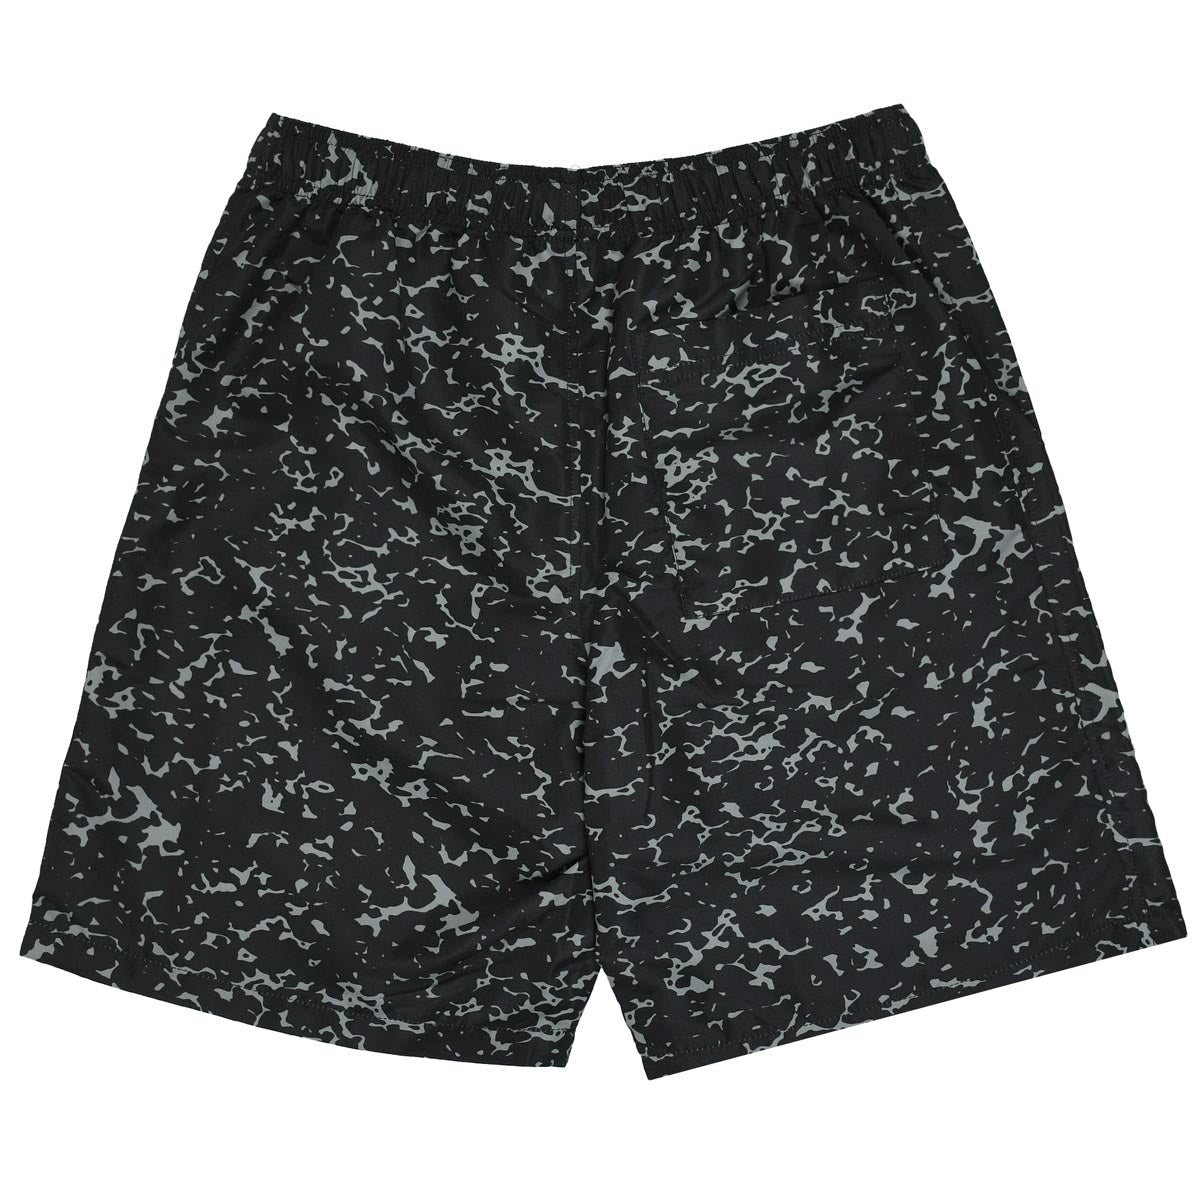 Quasi Duece Shorts - Black image 2